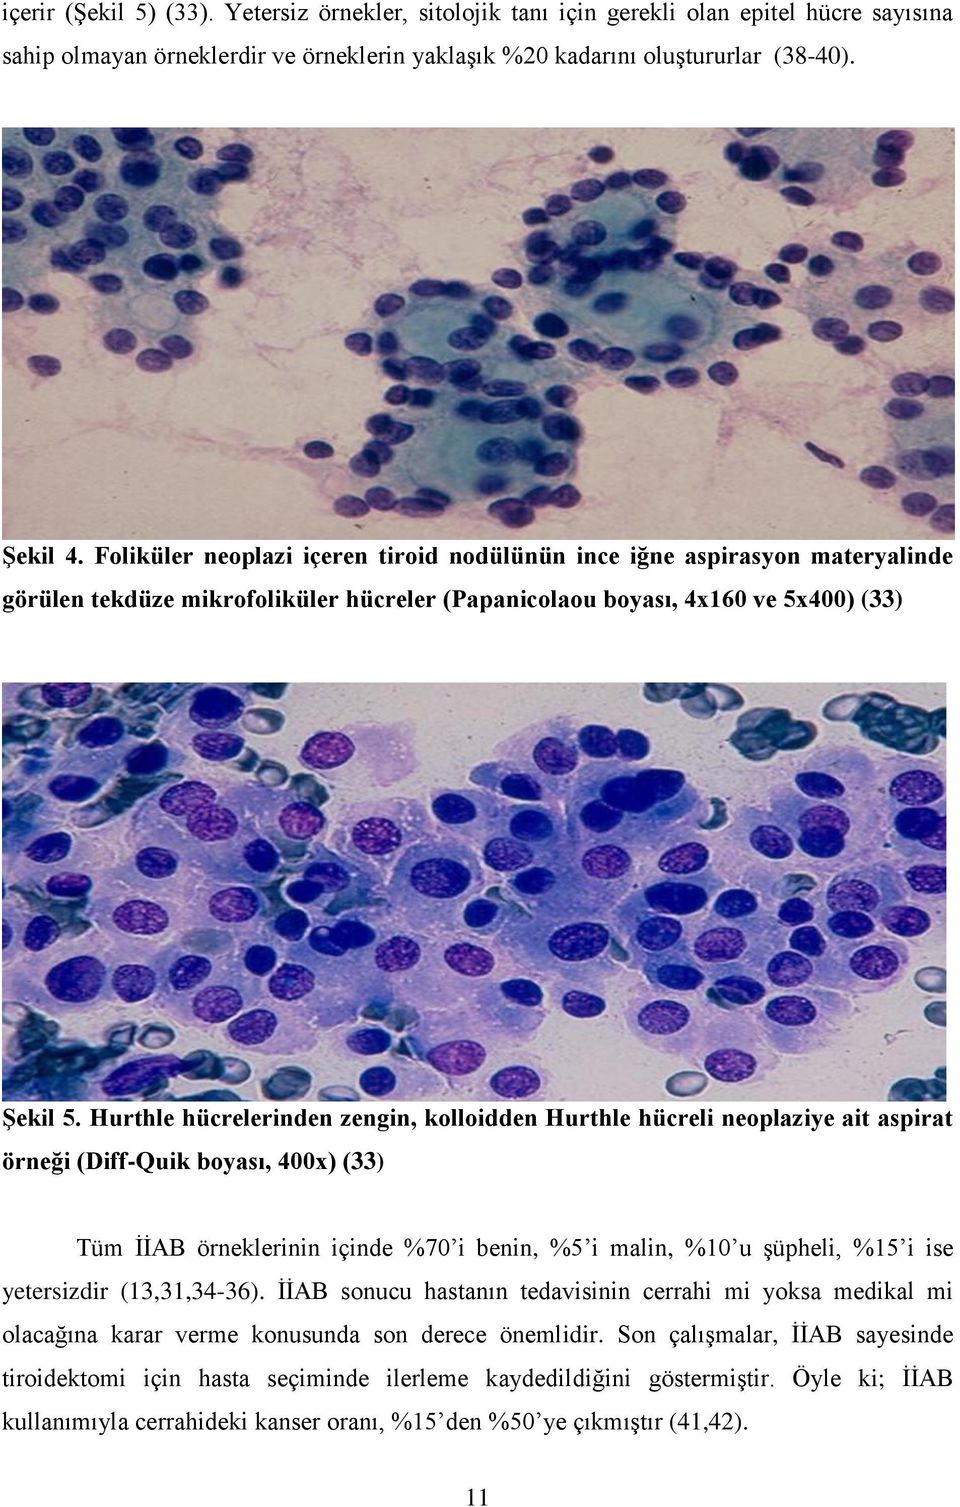 Hurthle hücrelerinden zengin, kolloidden Hurthle hücreli neoplaziye ait aspirat örneği (Diff-Quik boyası, 400x) (33) Tüm ĠĠAB örneklerinin içinde %70 i benin, %5 i malin, %10 u Ģüpheli, %15 i ise